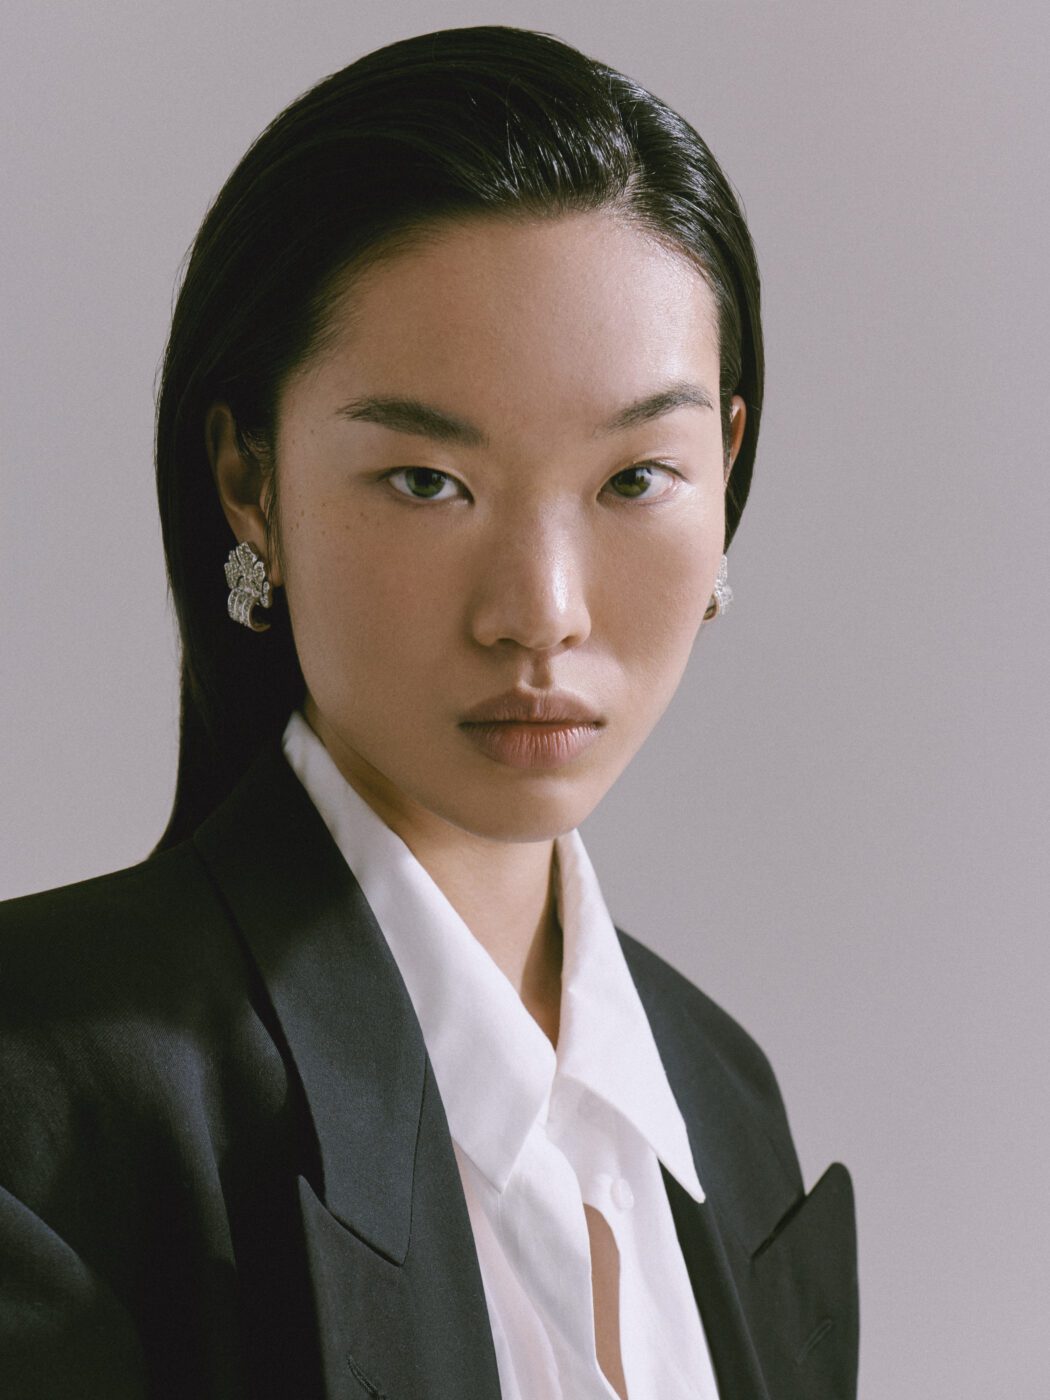 Milk - Female Model | Basic Models: Singapore Modelling Agency